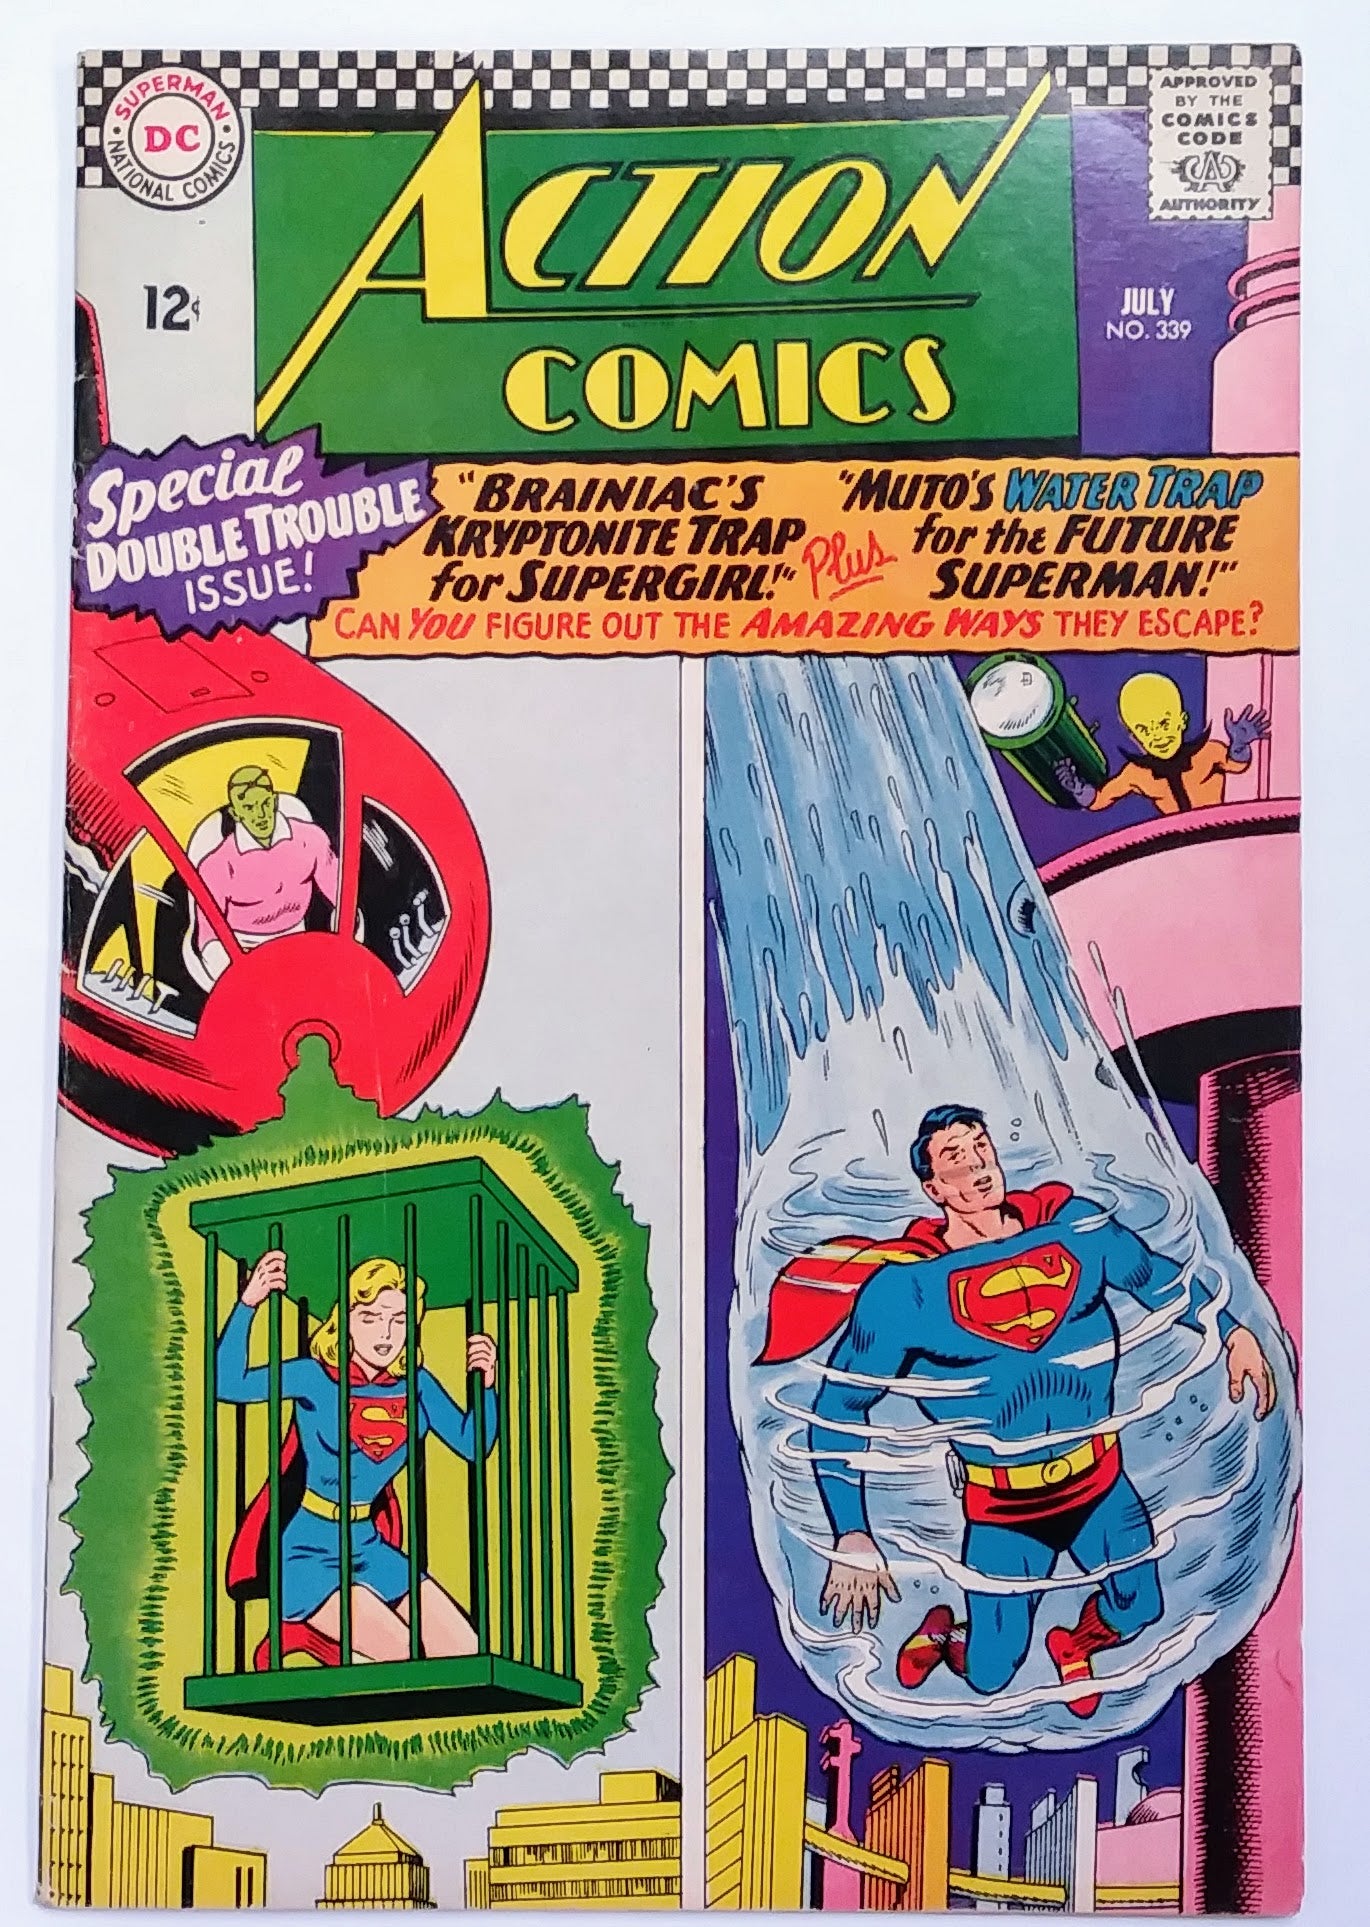 Action Comics #339, DC Comics (July 1966)